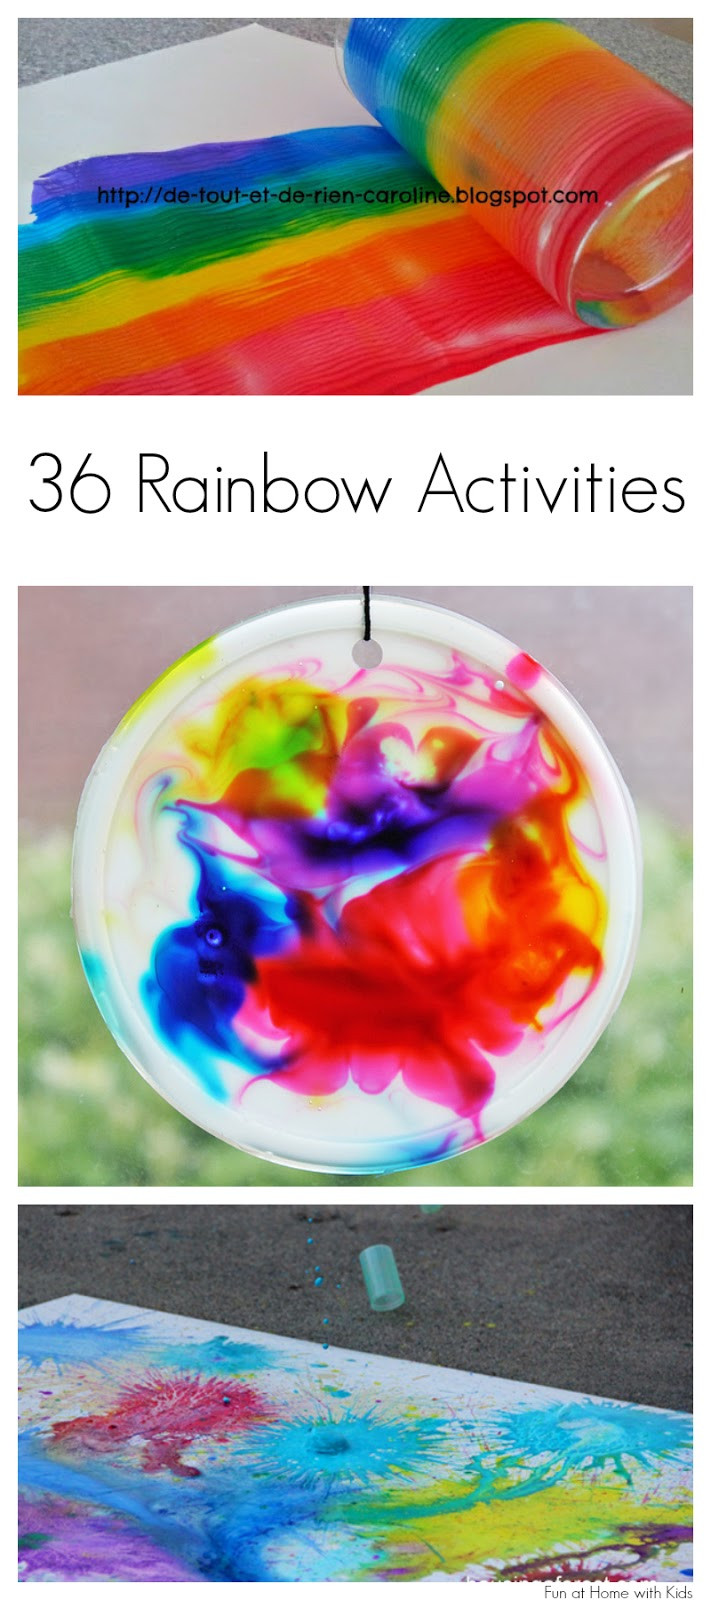 Toddler Artwork Ideas
 36 Rainbow Activities for Babies Toddlers Preschoolers